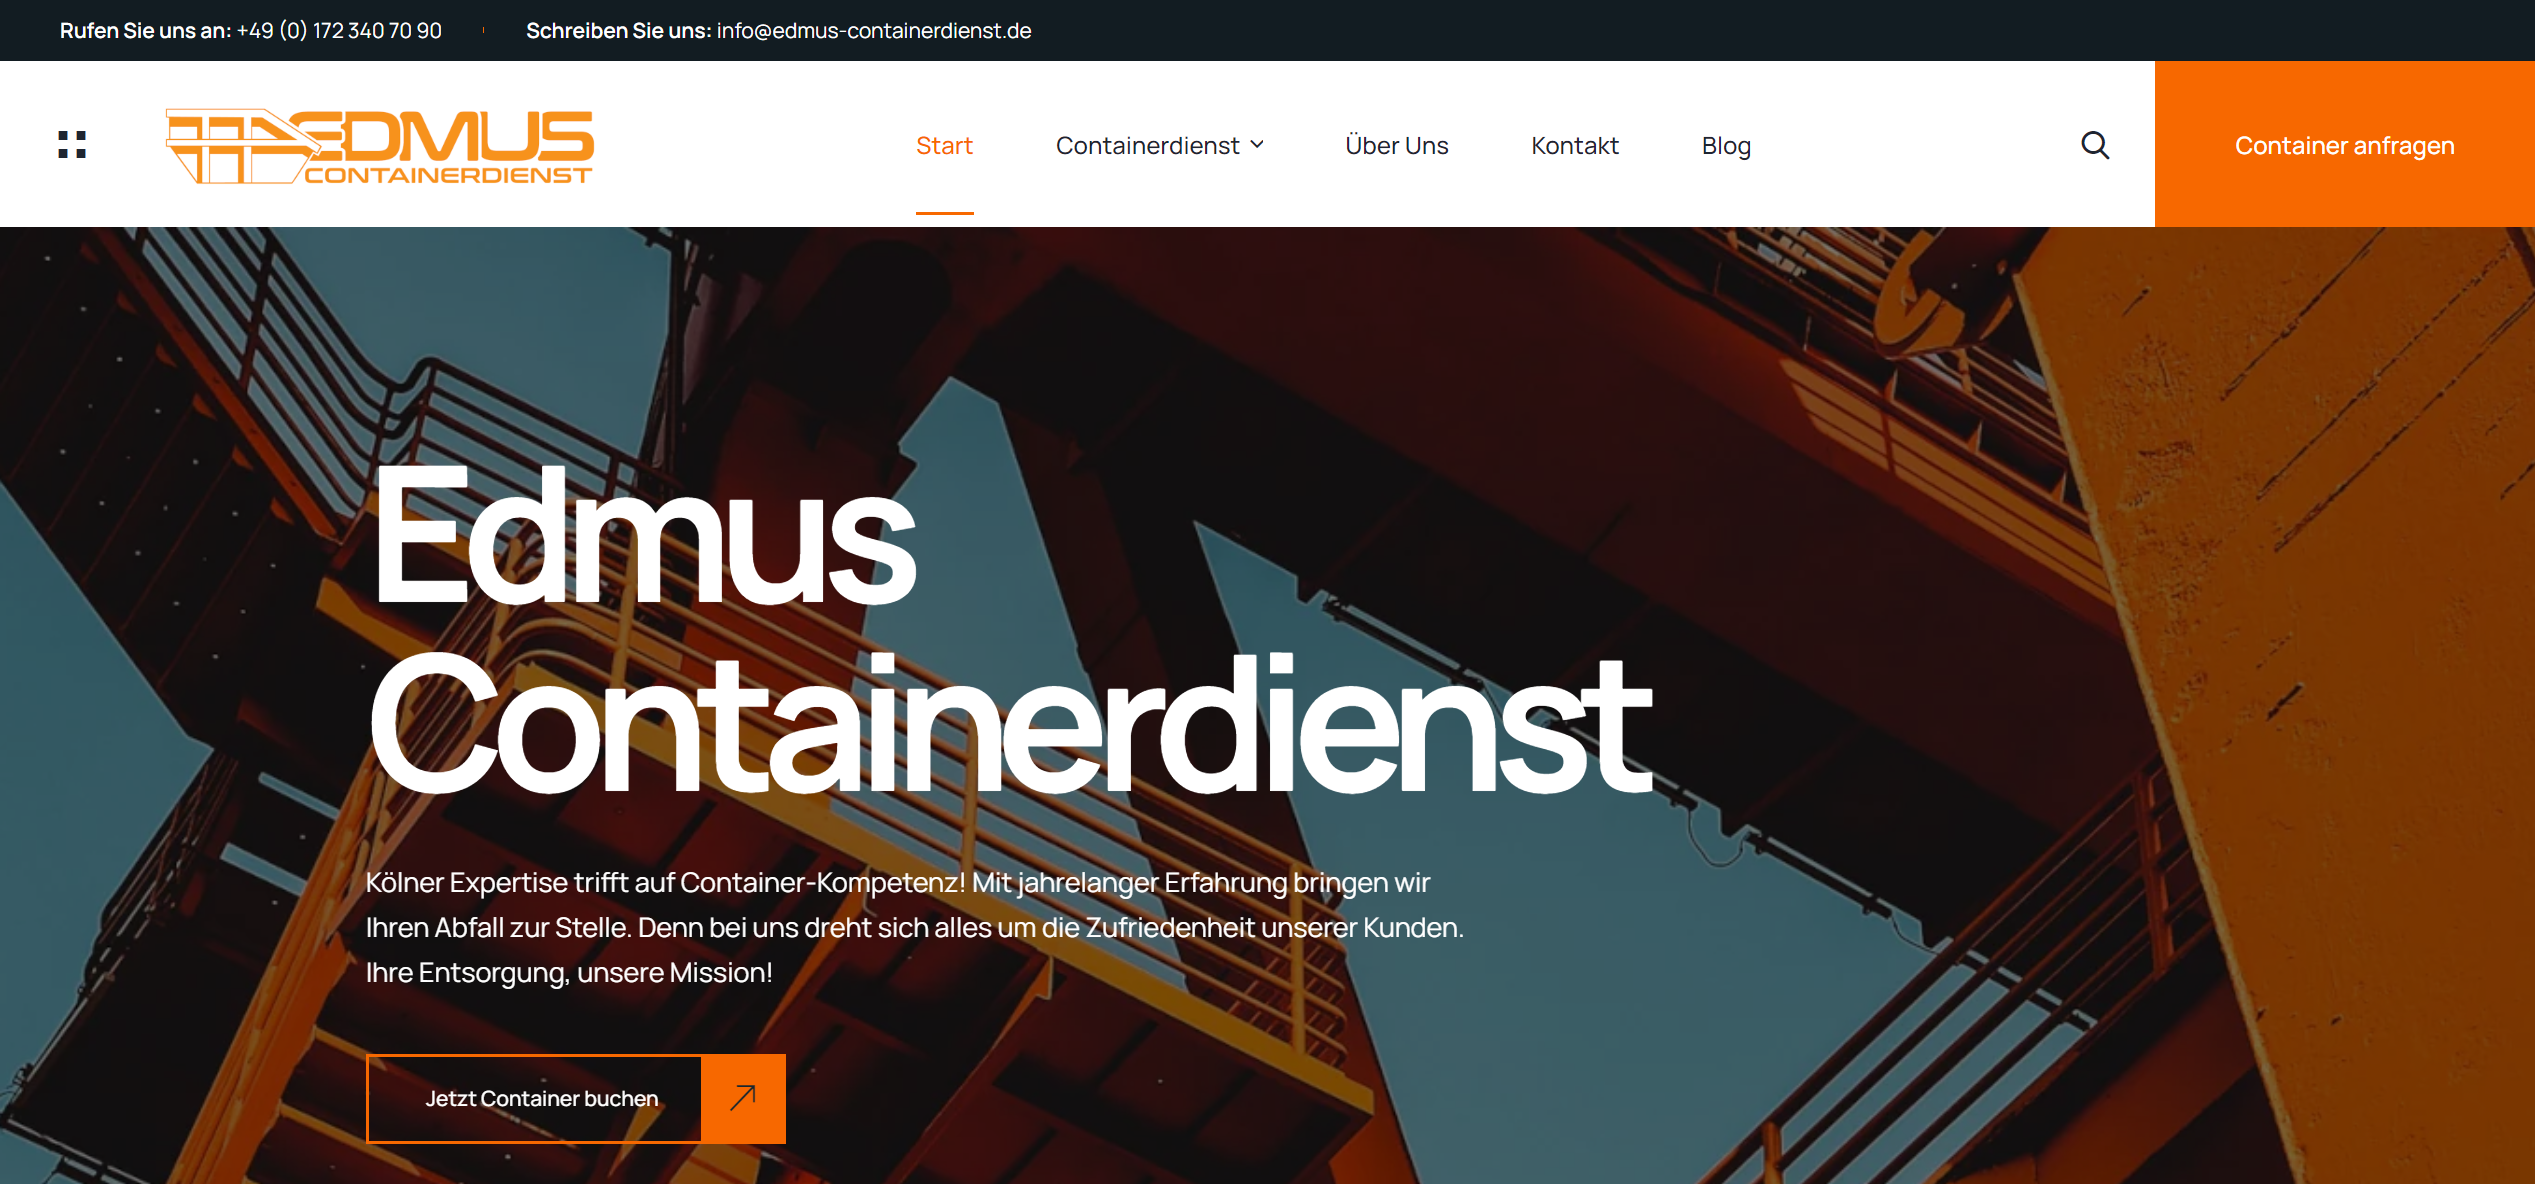 2024-06-15 18_20_58-Edmus Containerdienst - Container-Kompetenz aus Köln.